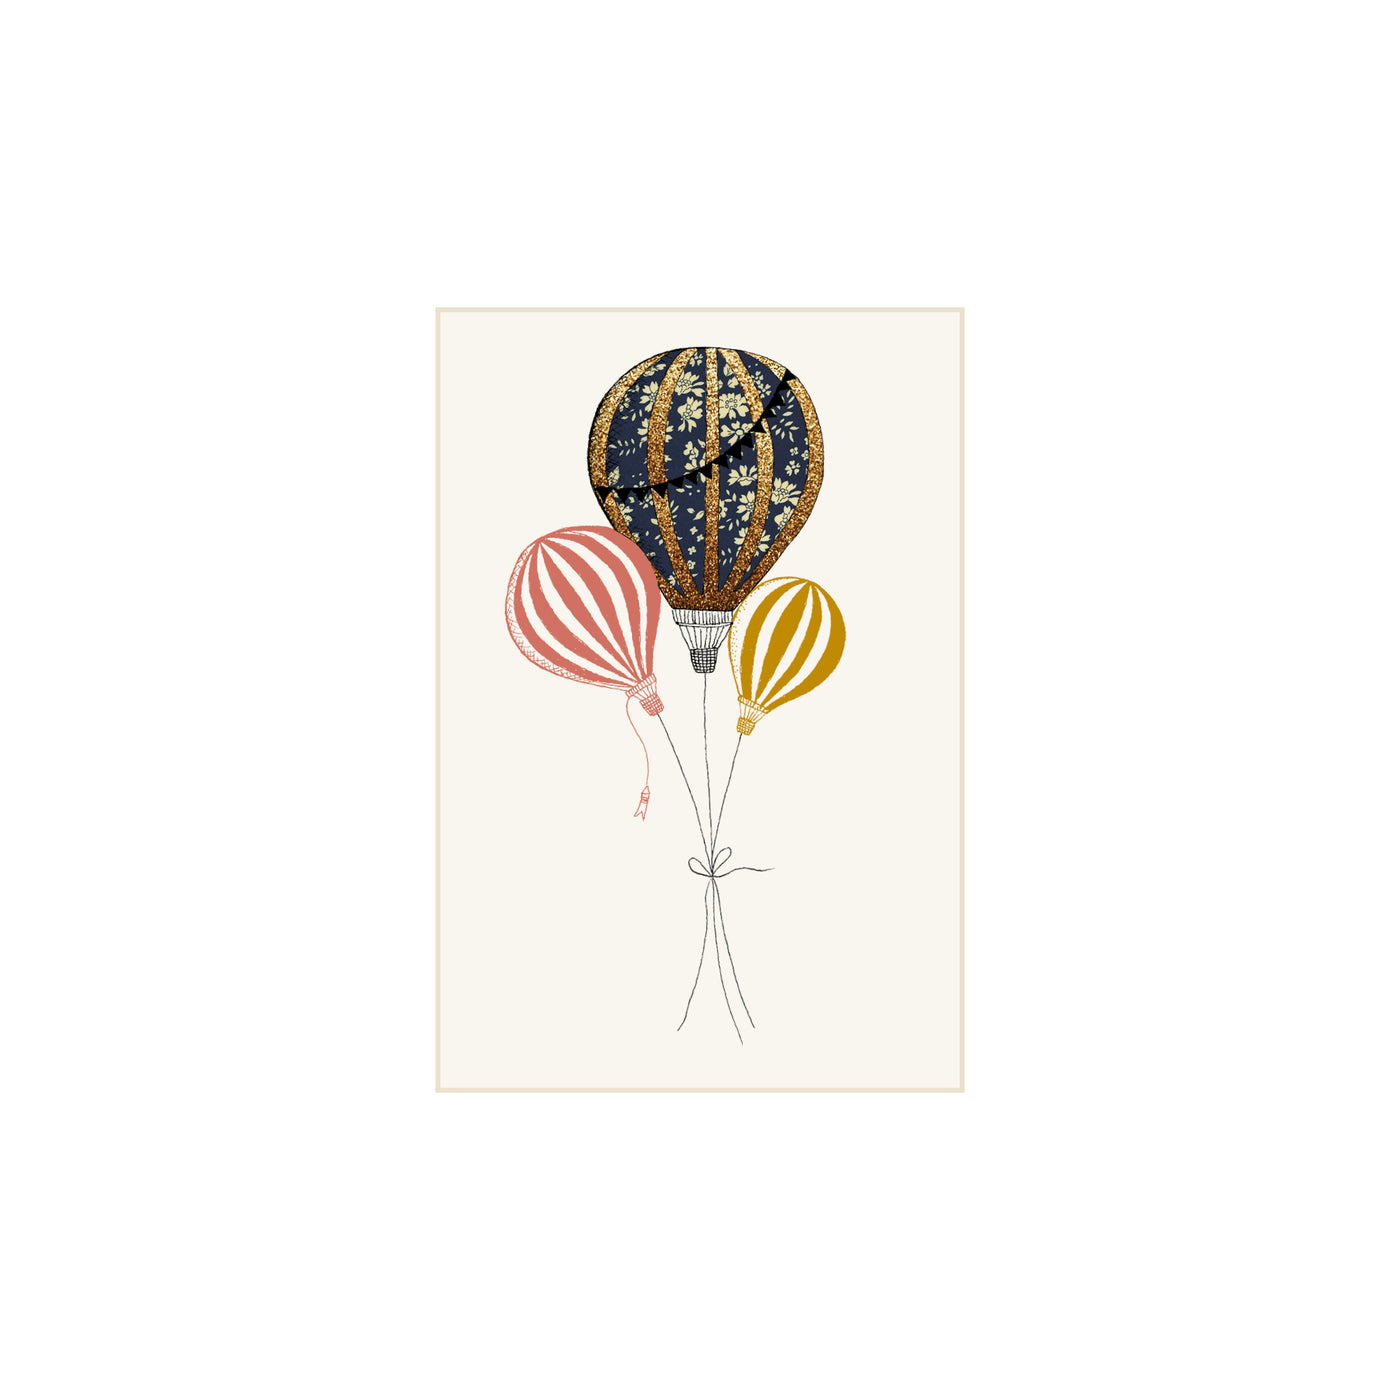 Karrusella print collection A7 kort, Liberty luftballon navy/rød/mustard